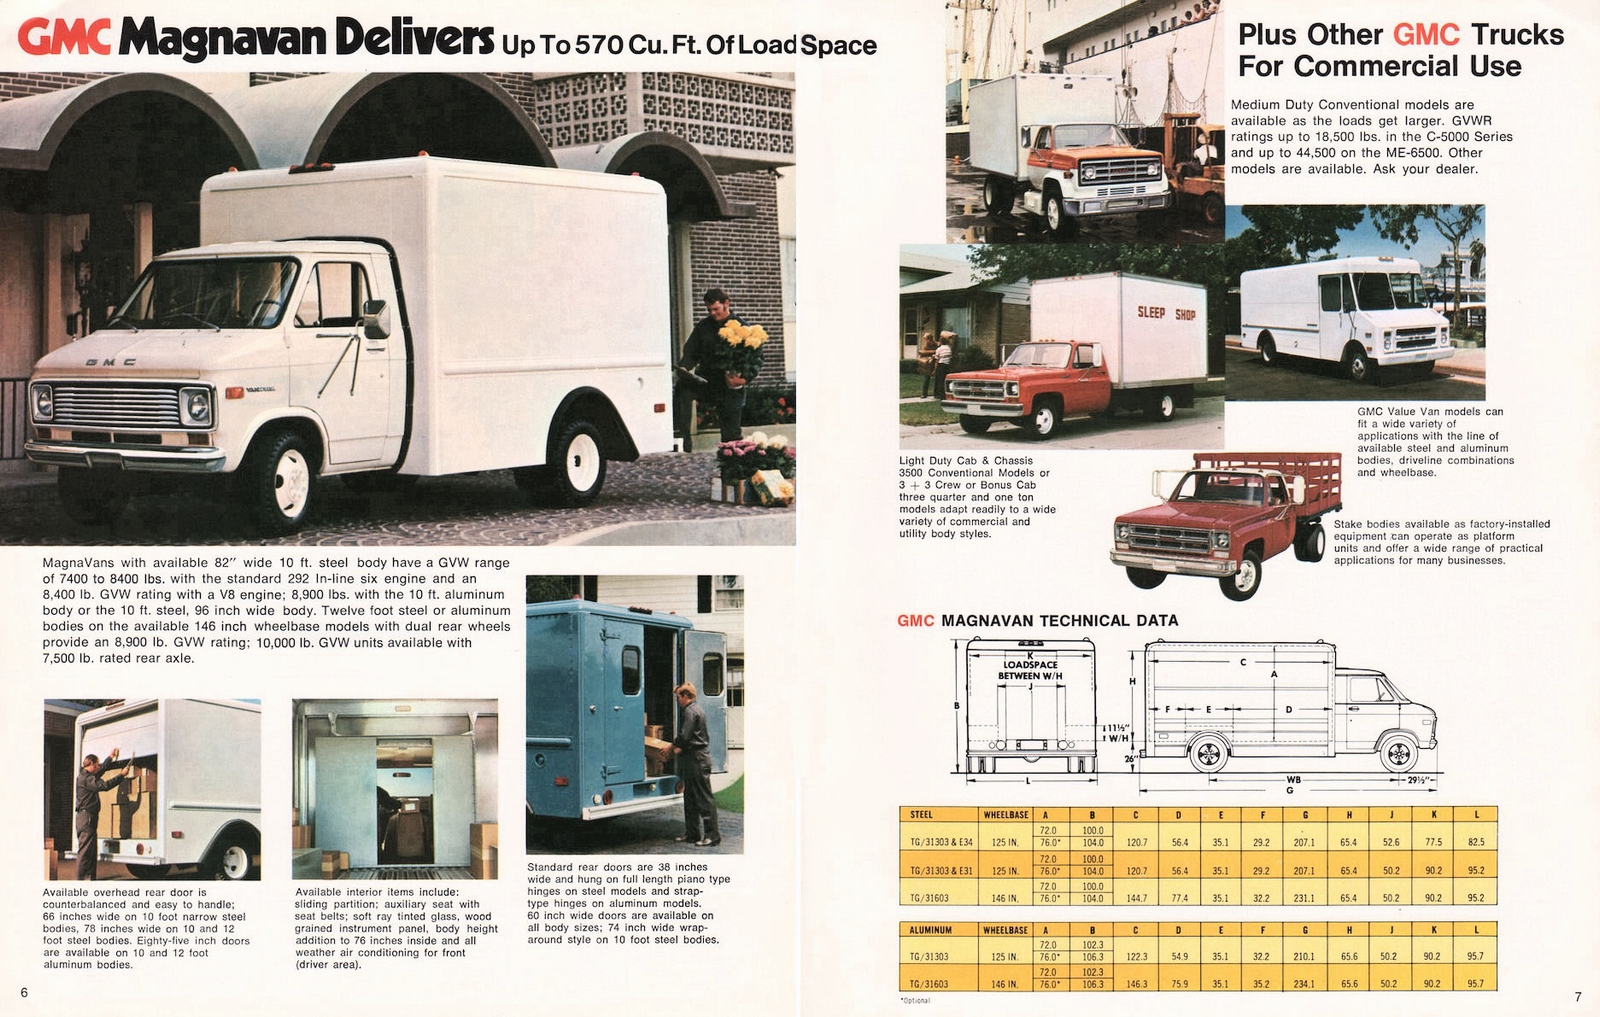 n_1976 GMC Commericial Trucks-06-07.jpg